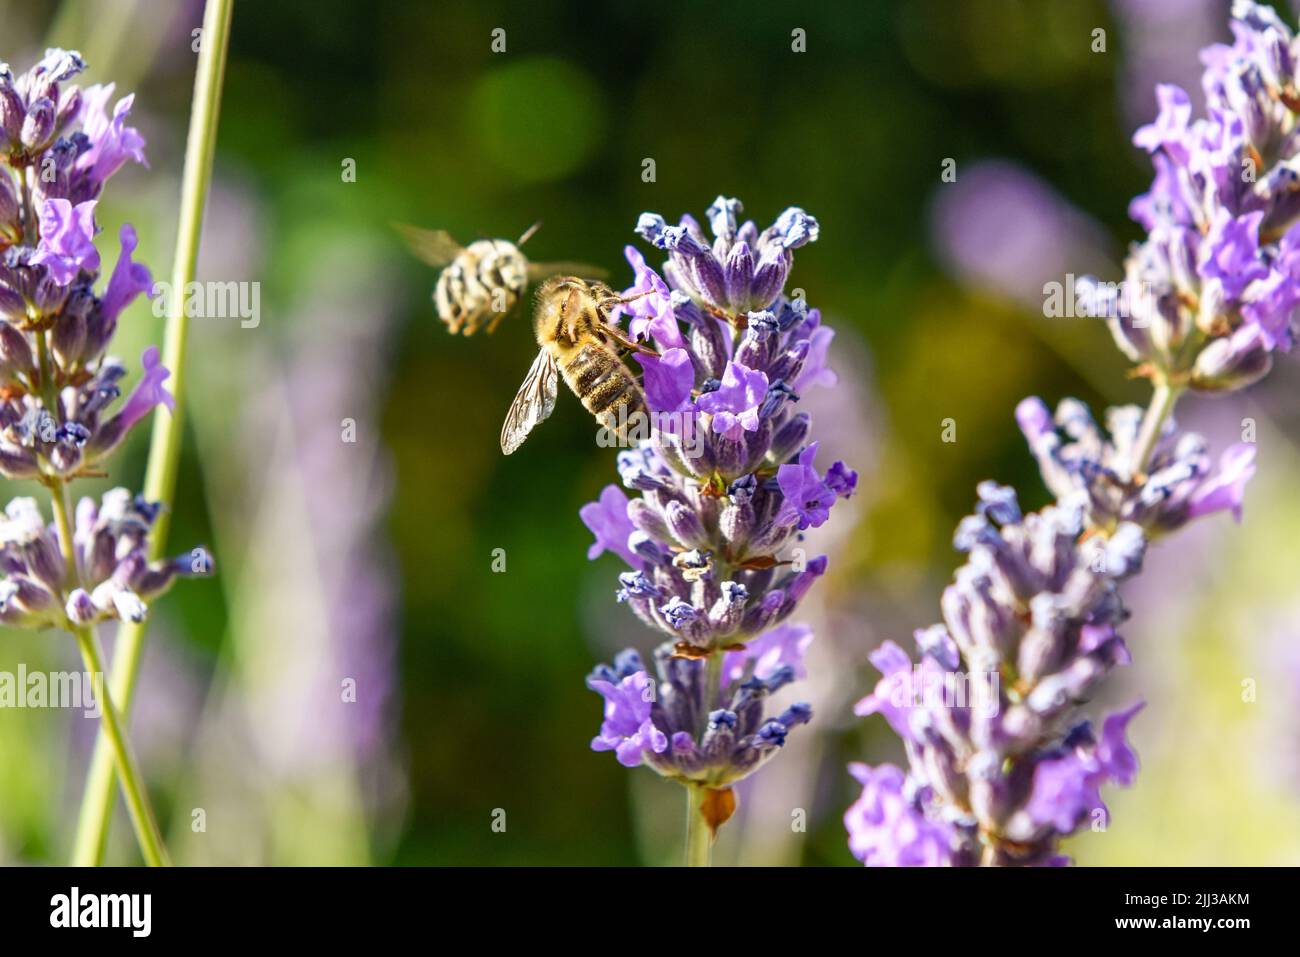 Una abeja de miel recolectando polen de una flor como parte del proceso de elaboración de la miel Foto de stock